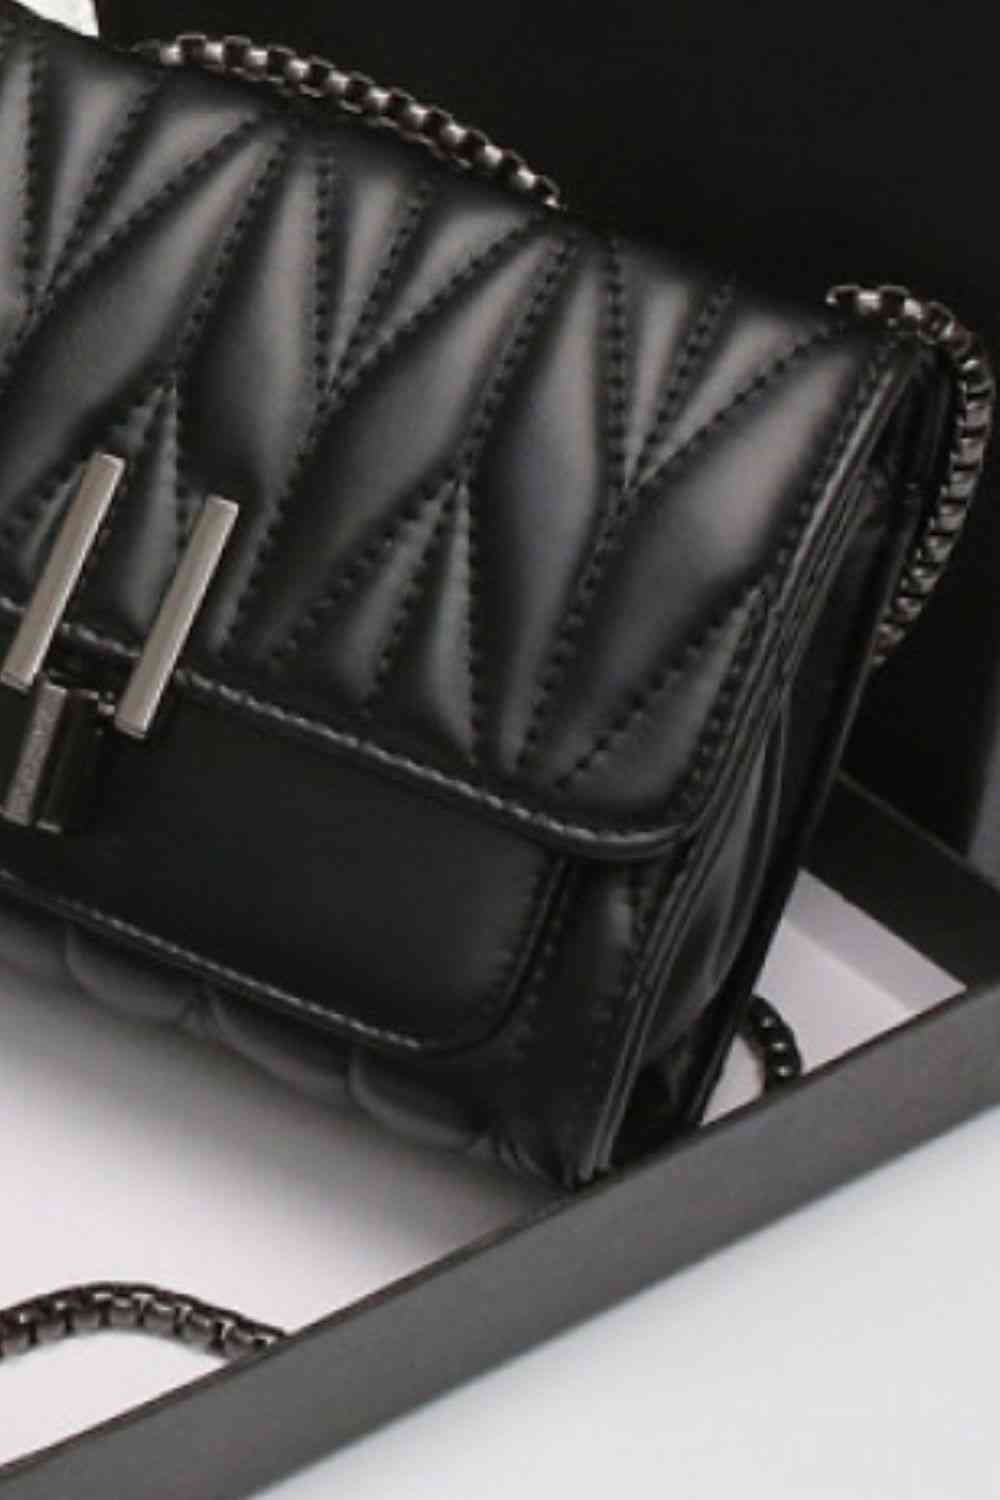 Adored PU Leather Crossbody Bag - TRENDMELO